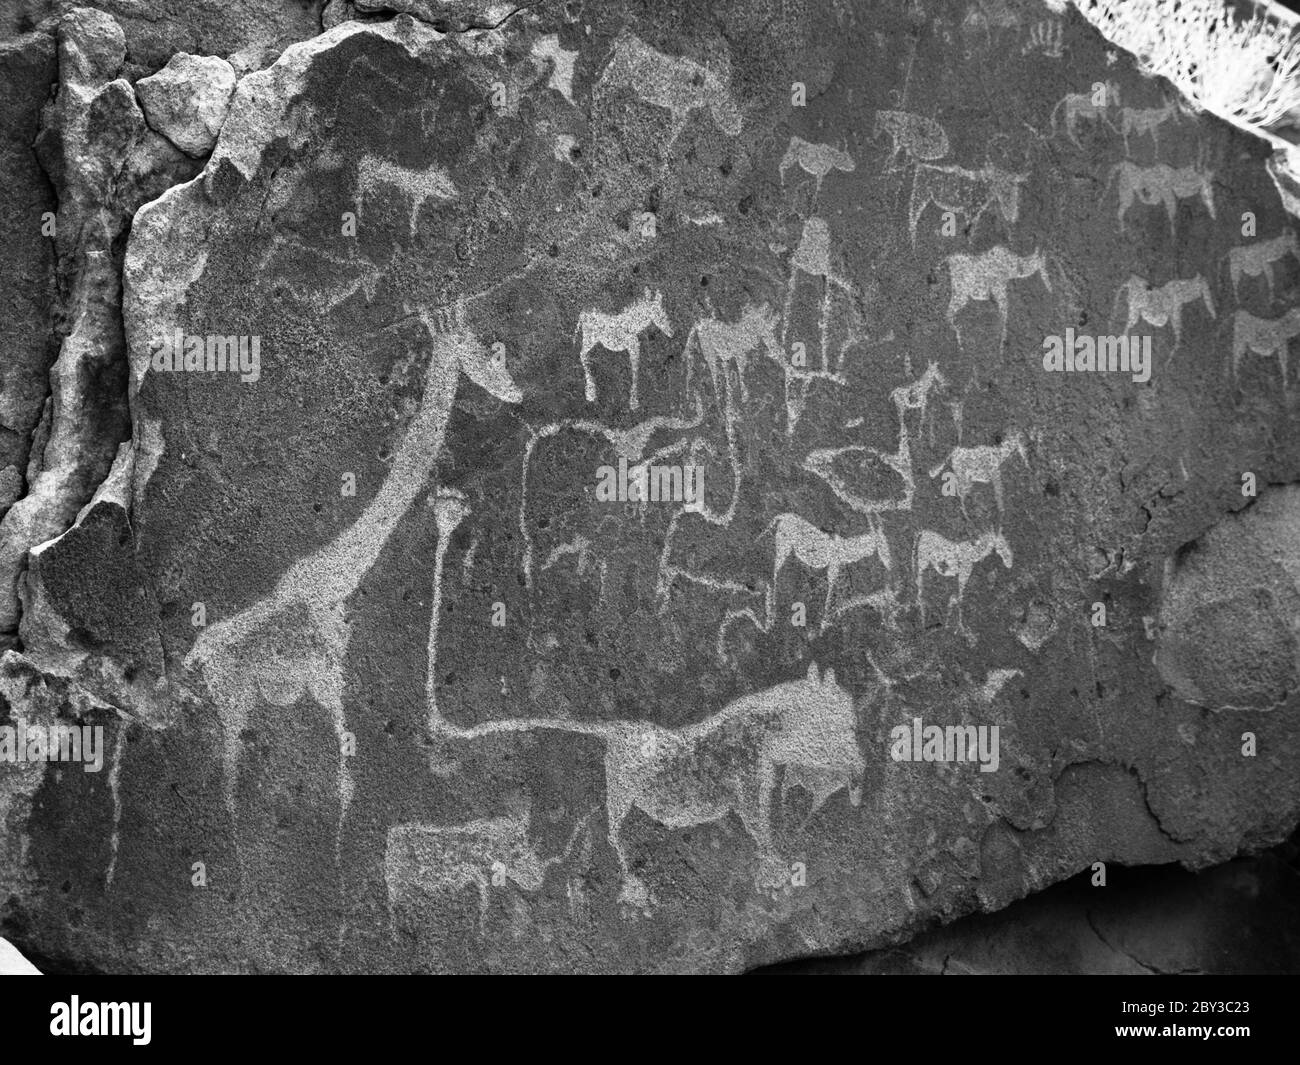 Incisioni preistoriche Boscimane - piatto leone con l'uomo leone e altri animali e simboli, Twyfelfontein, Namibia. Immagine in bianco e nero. Foto Stock